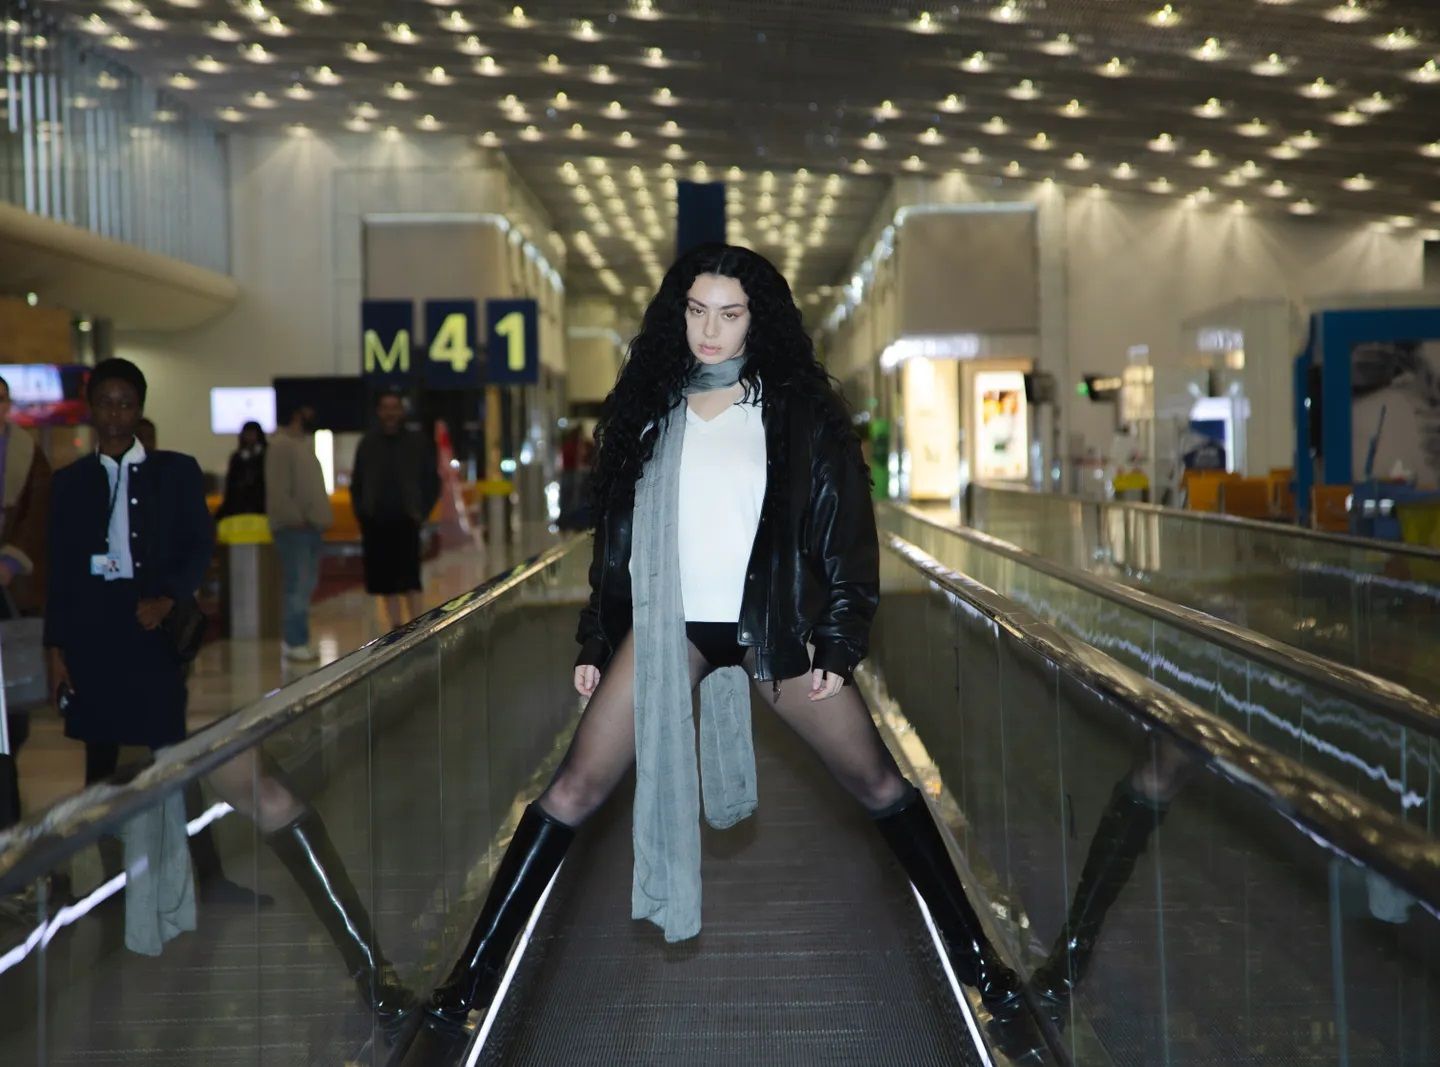 Танцы Charli XCX в аэропорту и клип режиссёра «Тихони» для Пи Джей Харви. Музыкальные релизы недели